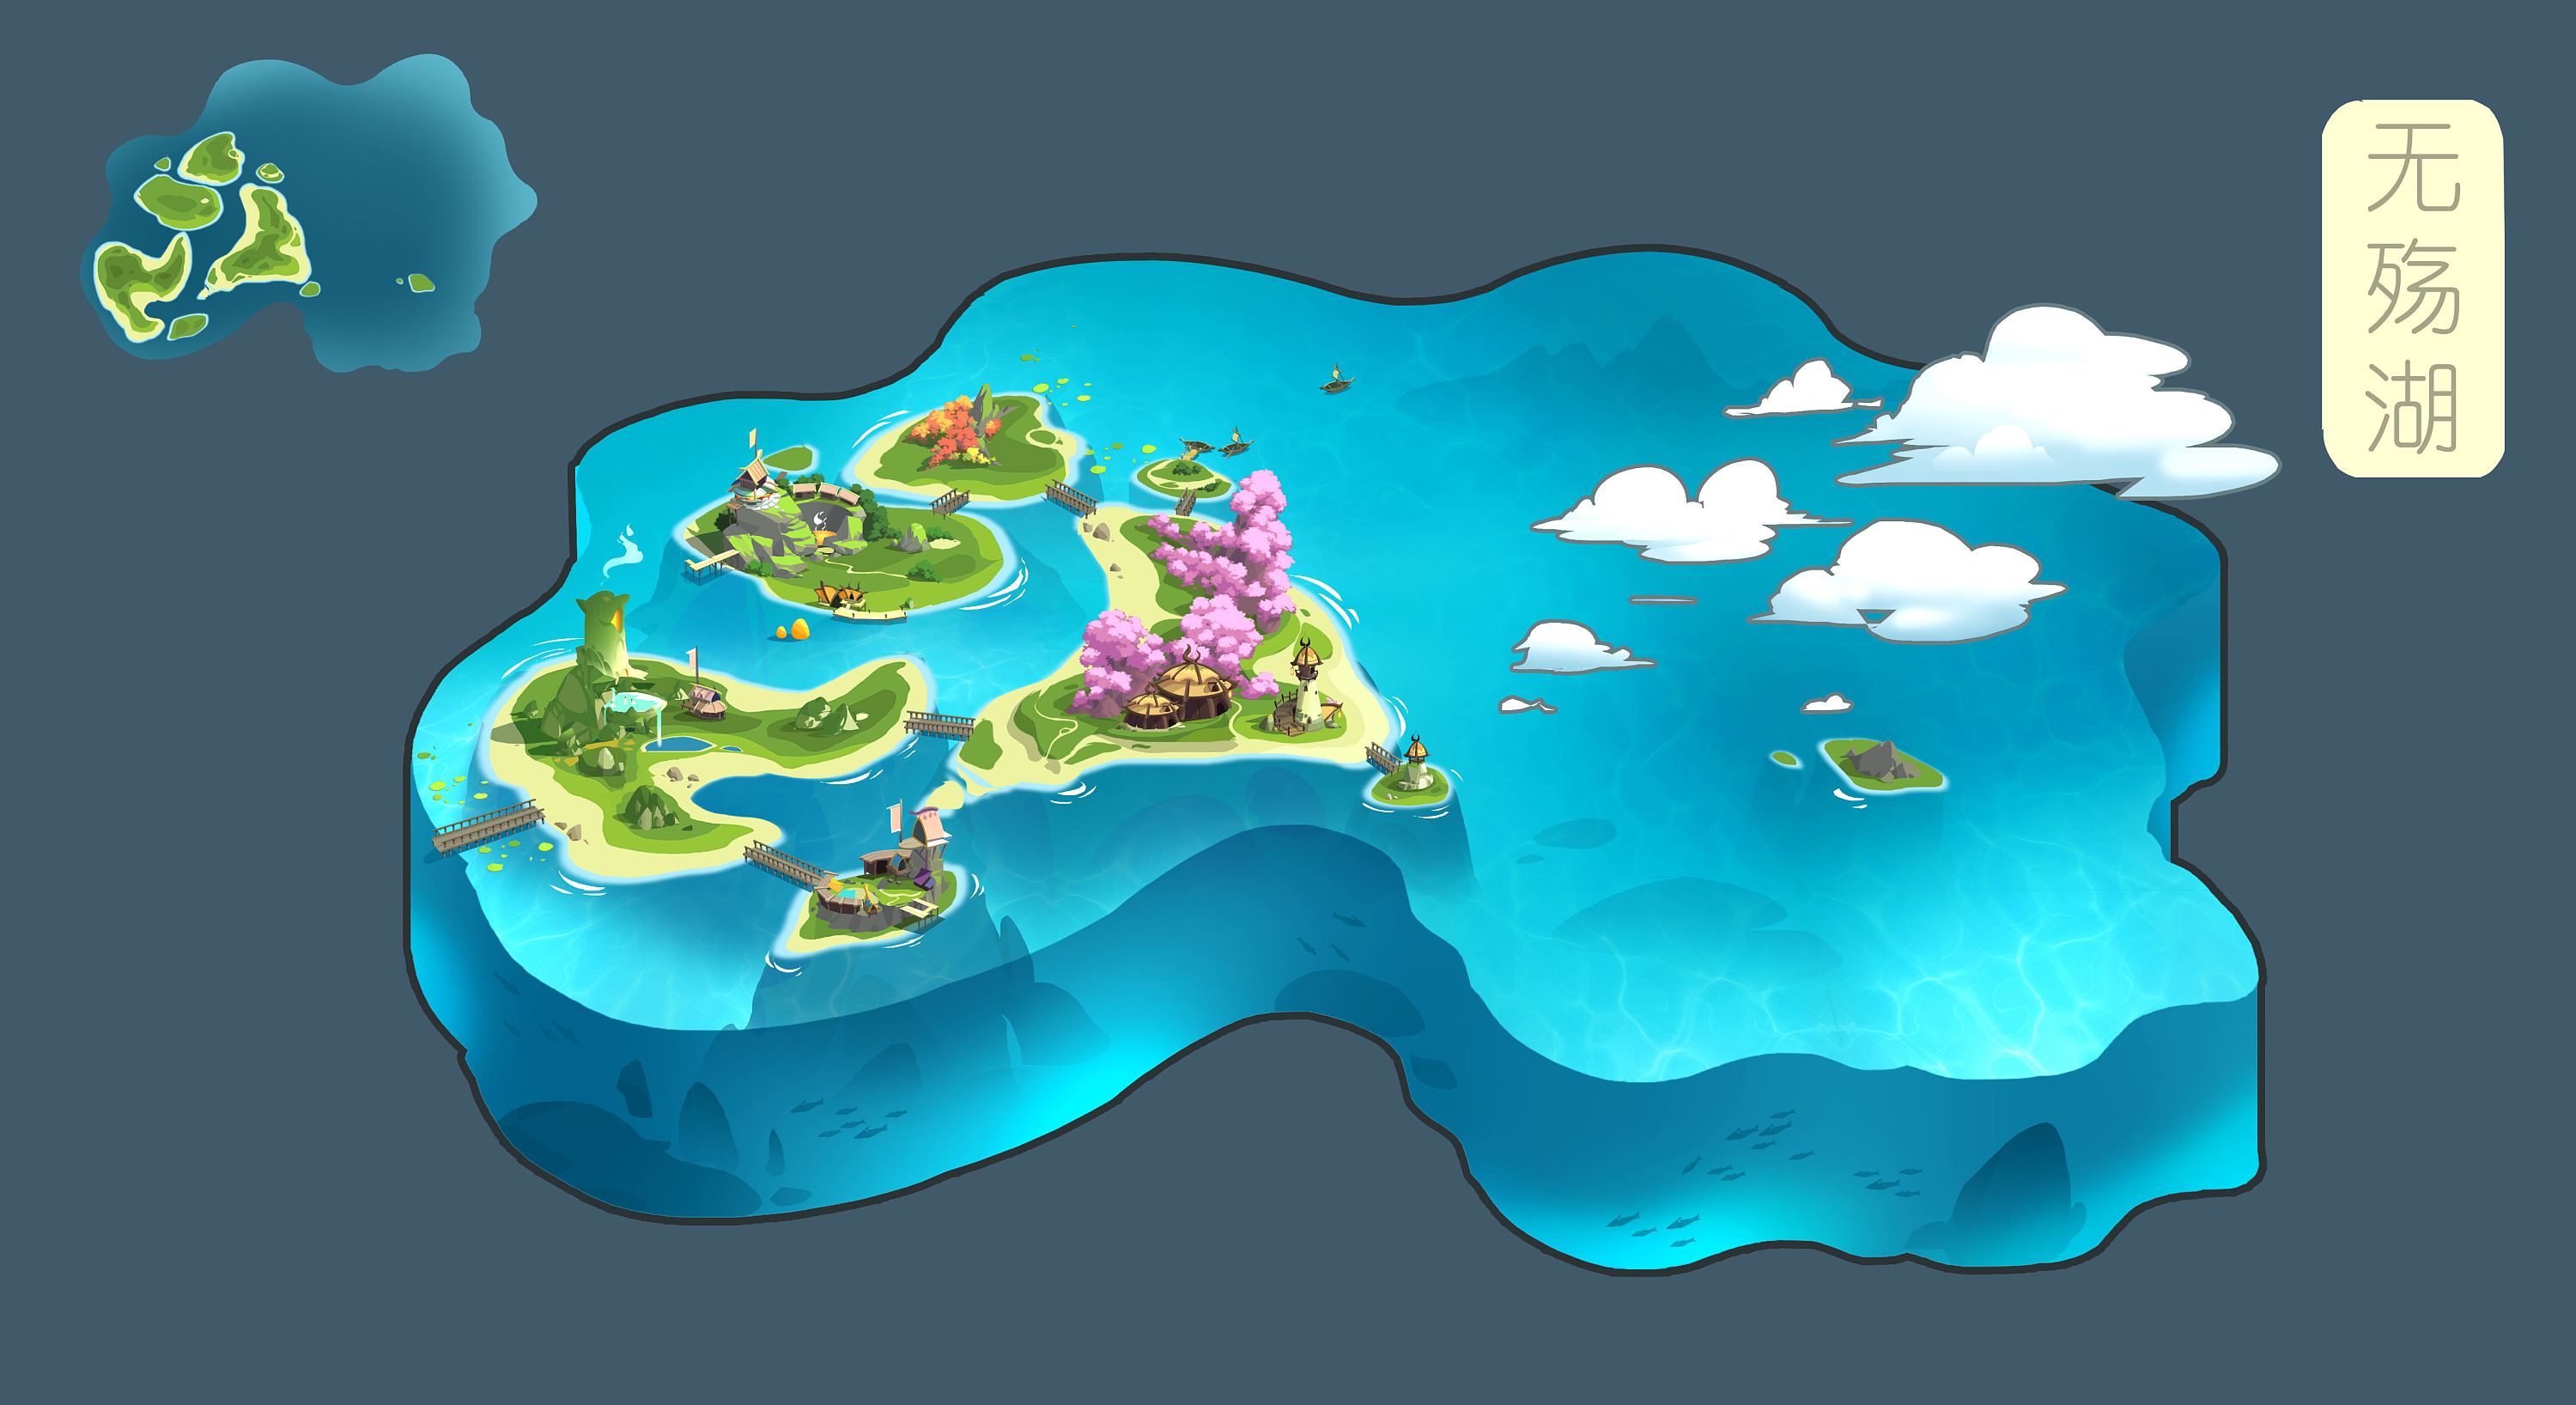 海岛 卡通海岛 岛屿 悬崖 小陆地 荒岛 群岛 游戏岛屿 小模型-自然场景模型库-3ds Max(.max)模型下载-cg模型网